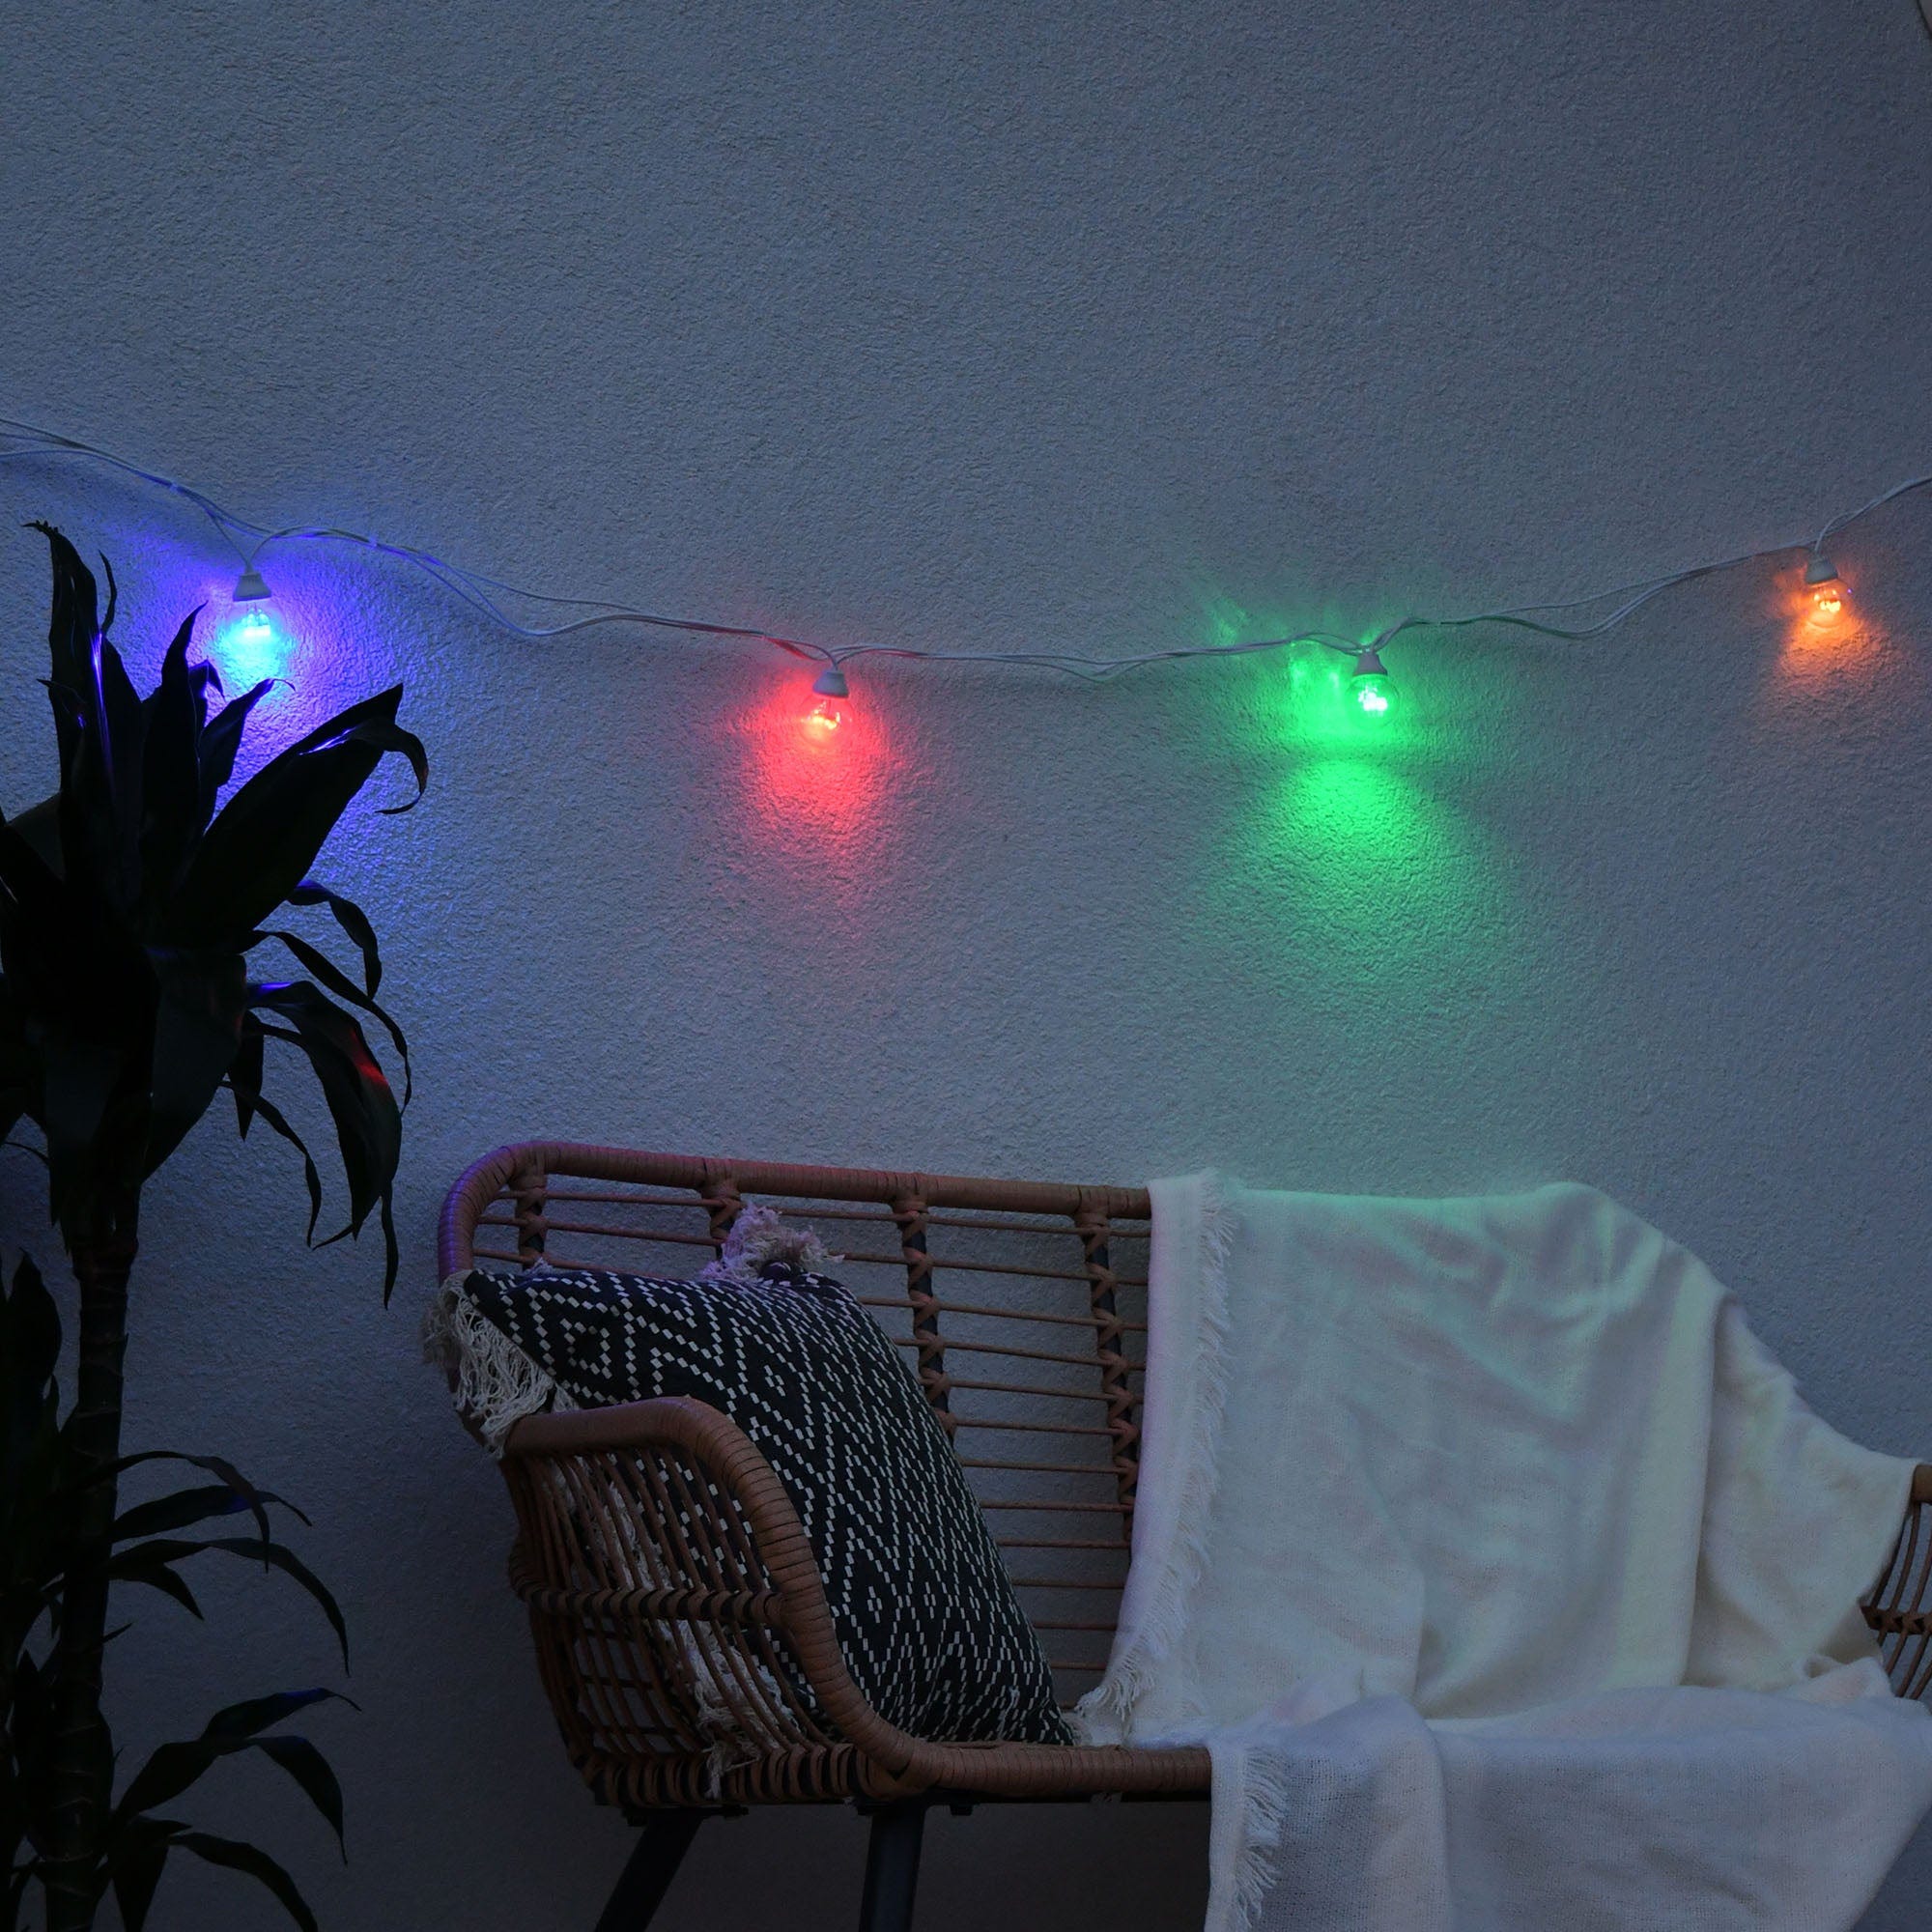 Guirlande lumineuse extérieur connectable 10 globes guinguette LED bla –